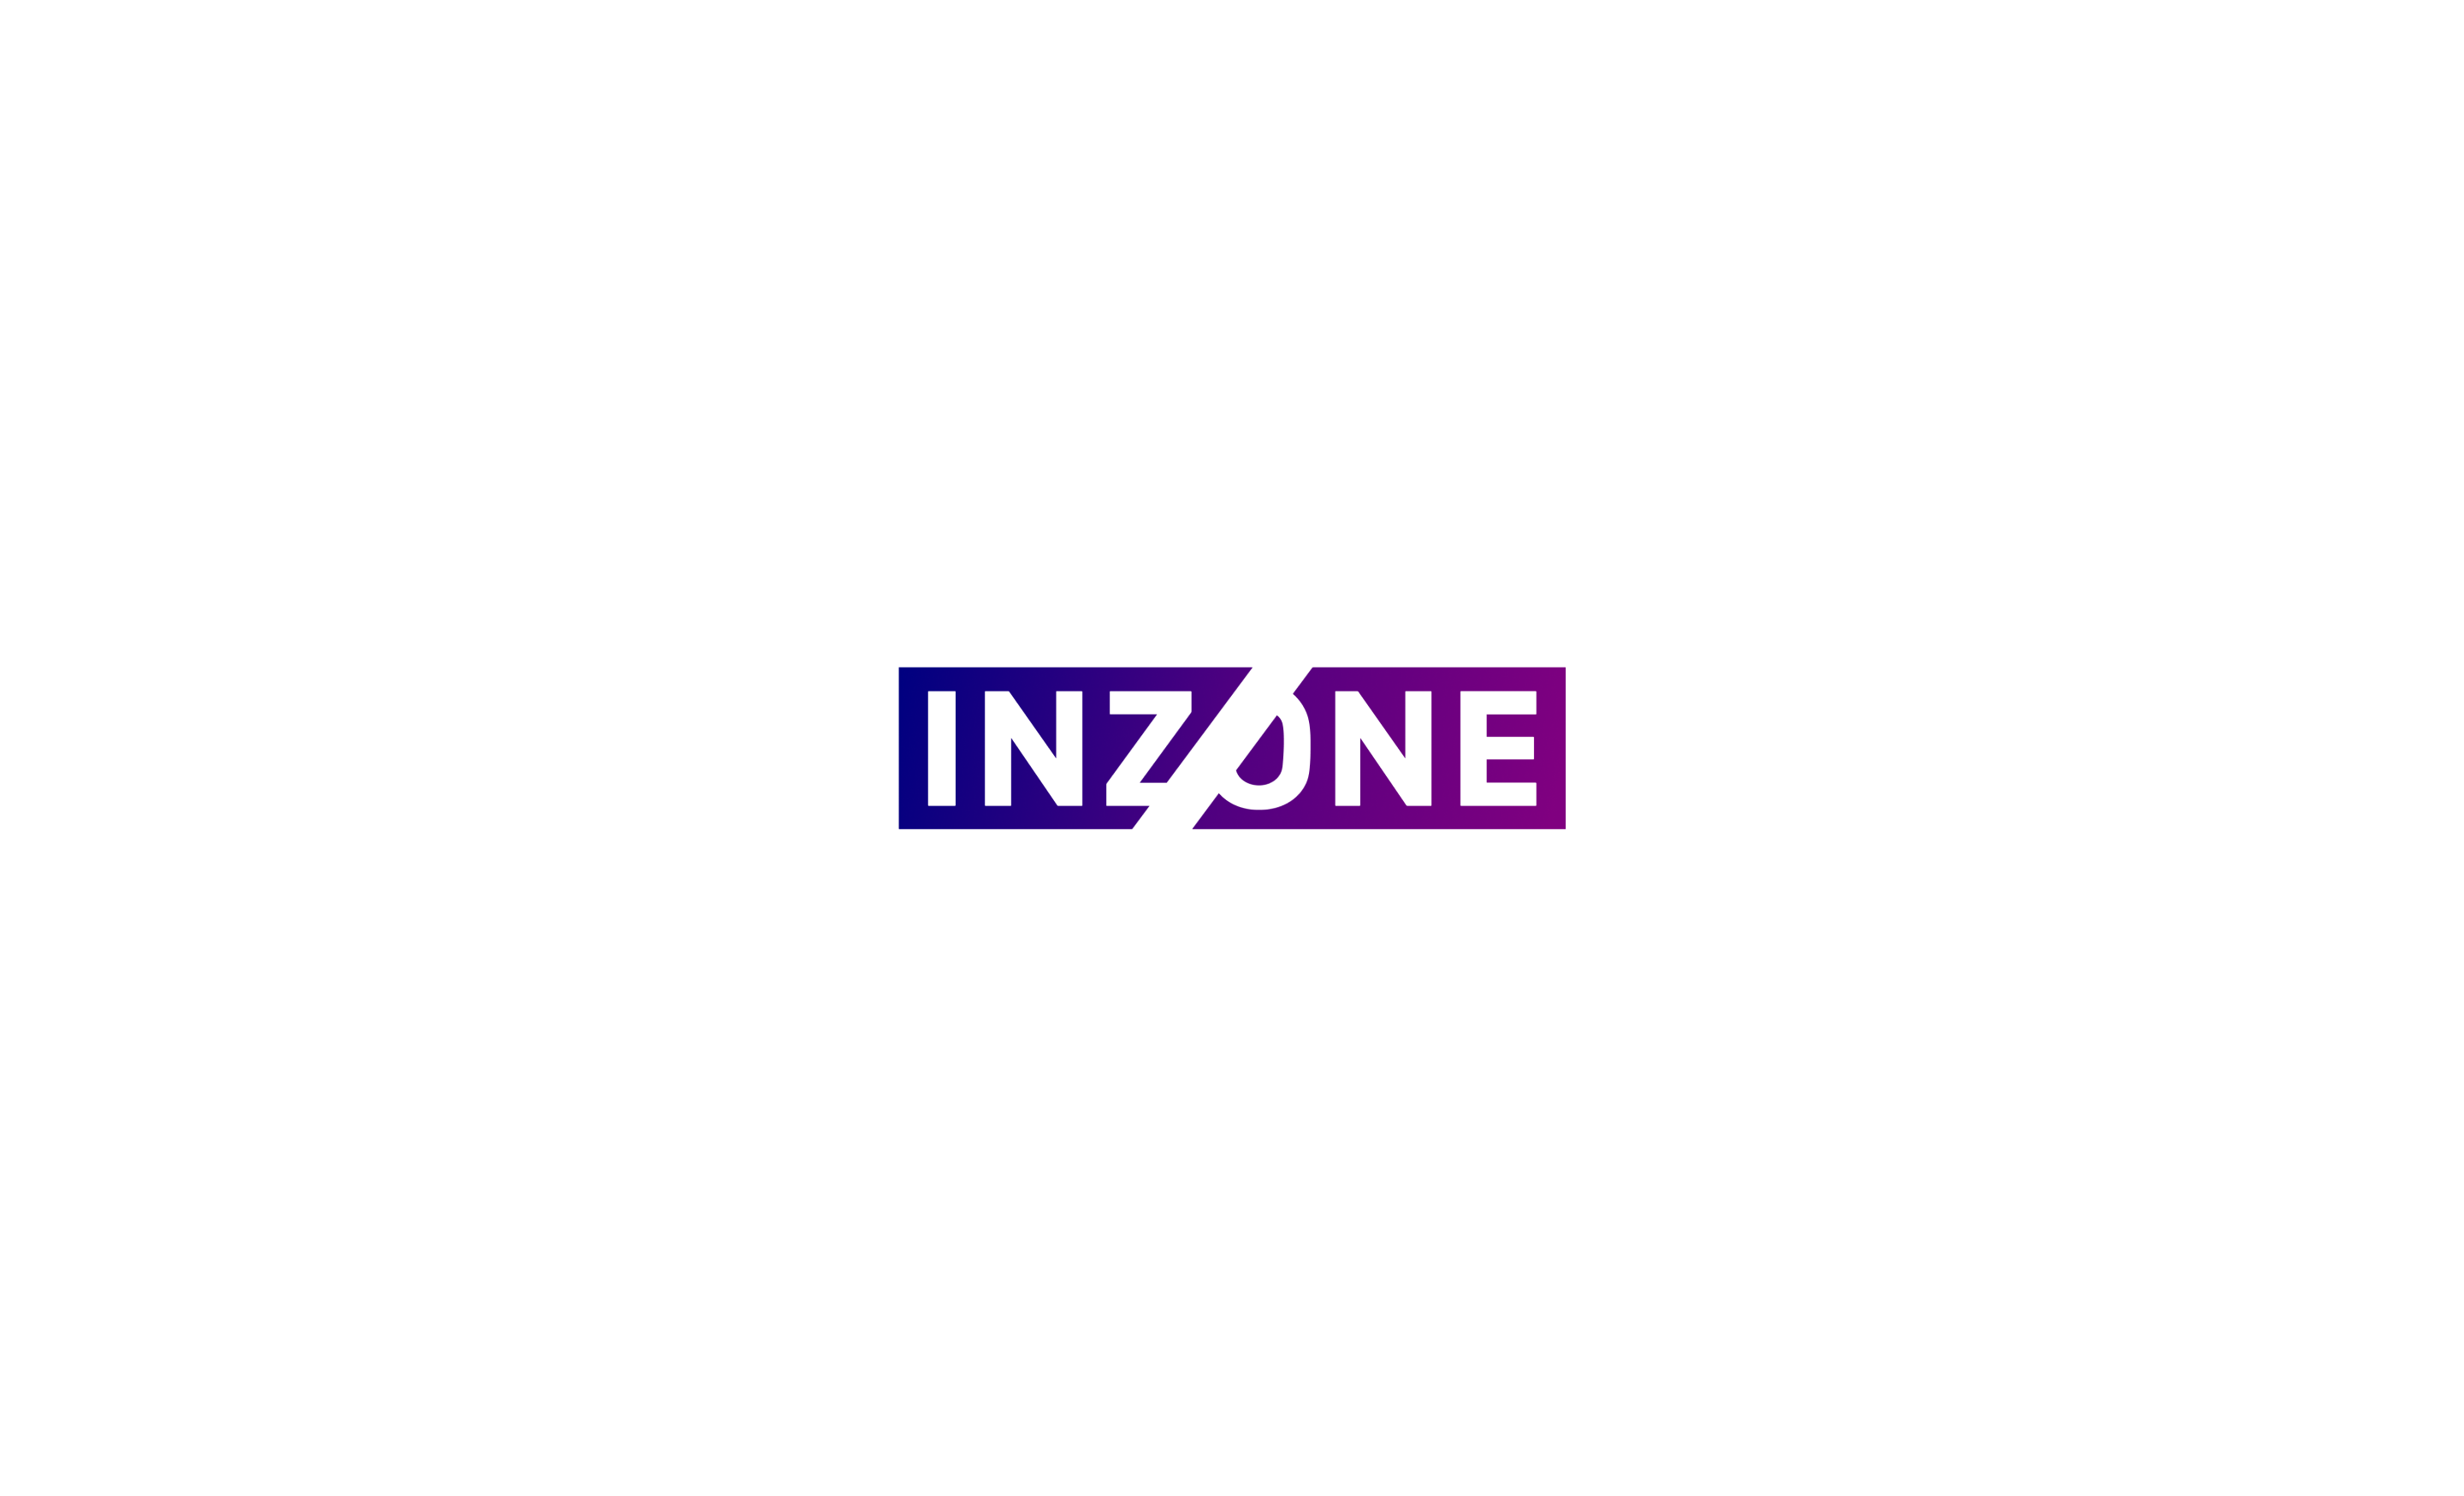 Inzone 로고